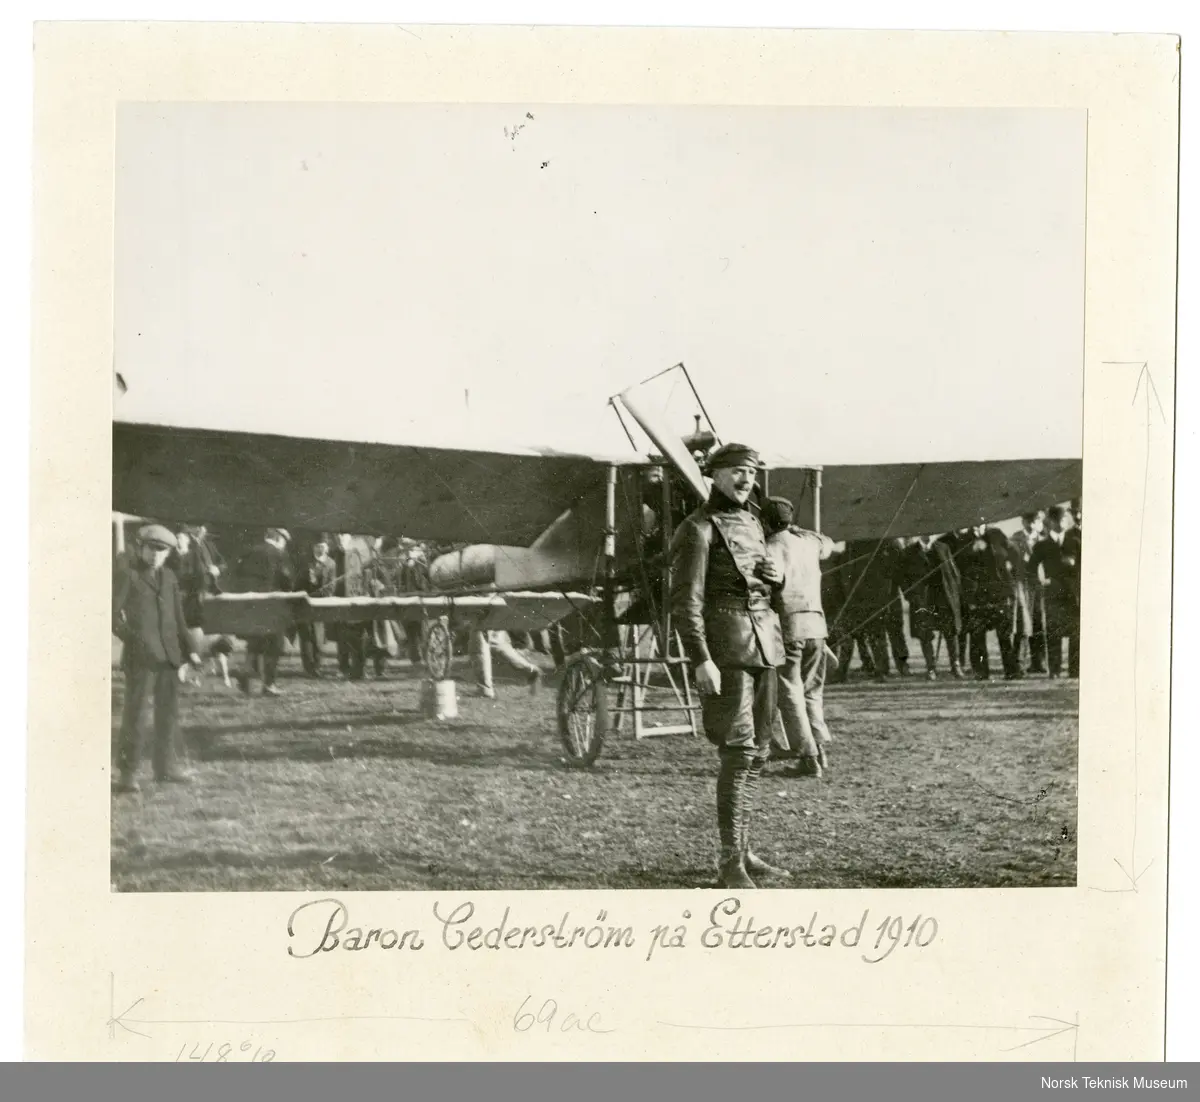 Baron Cederstrøm i sitt Blériot monoplan "Bil Bol" på Etterstad under de første flyvninger i Norge